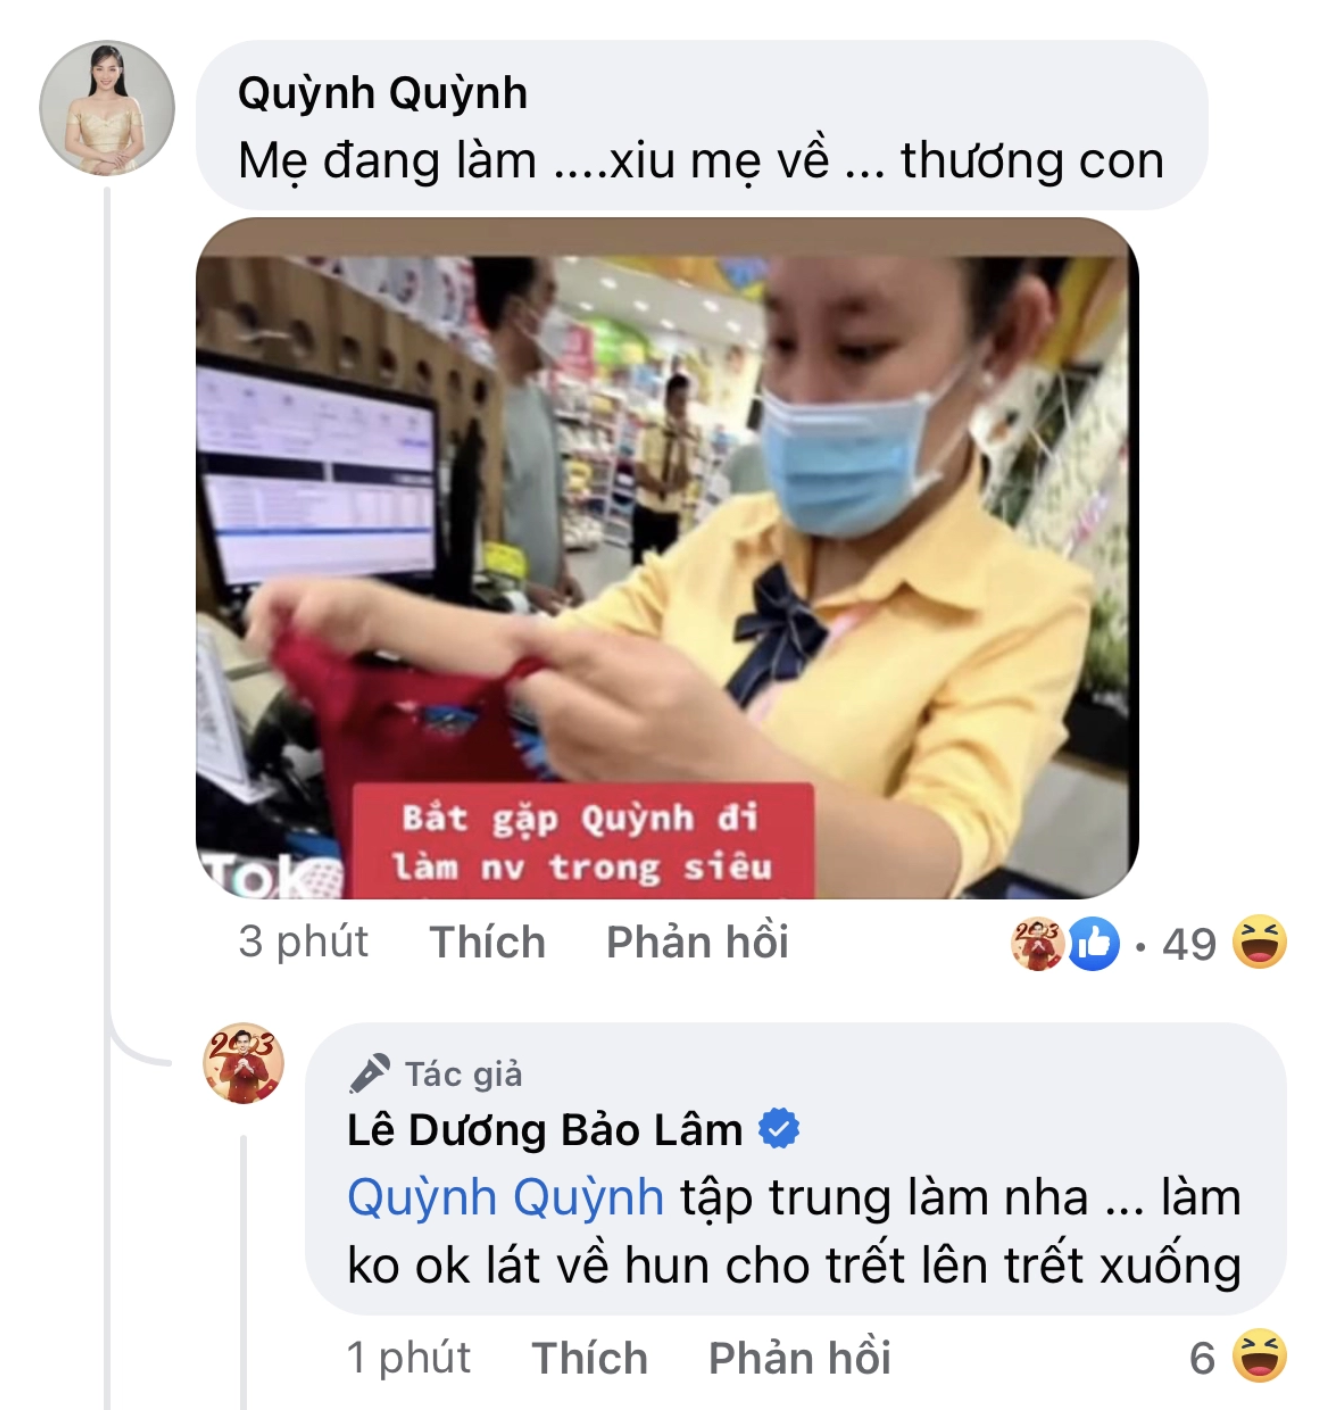 Hai vợ chồng đã lấy chính hình ảnh được cho là Quỳnh Quỳnh đi làm nhân viên trong siêu thị để bình luận đùa giỡn với nhau